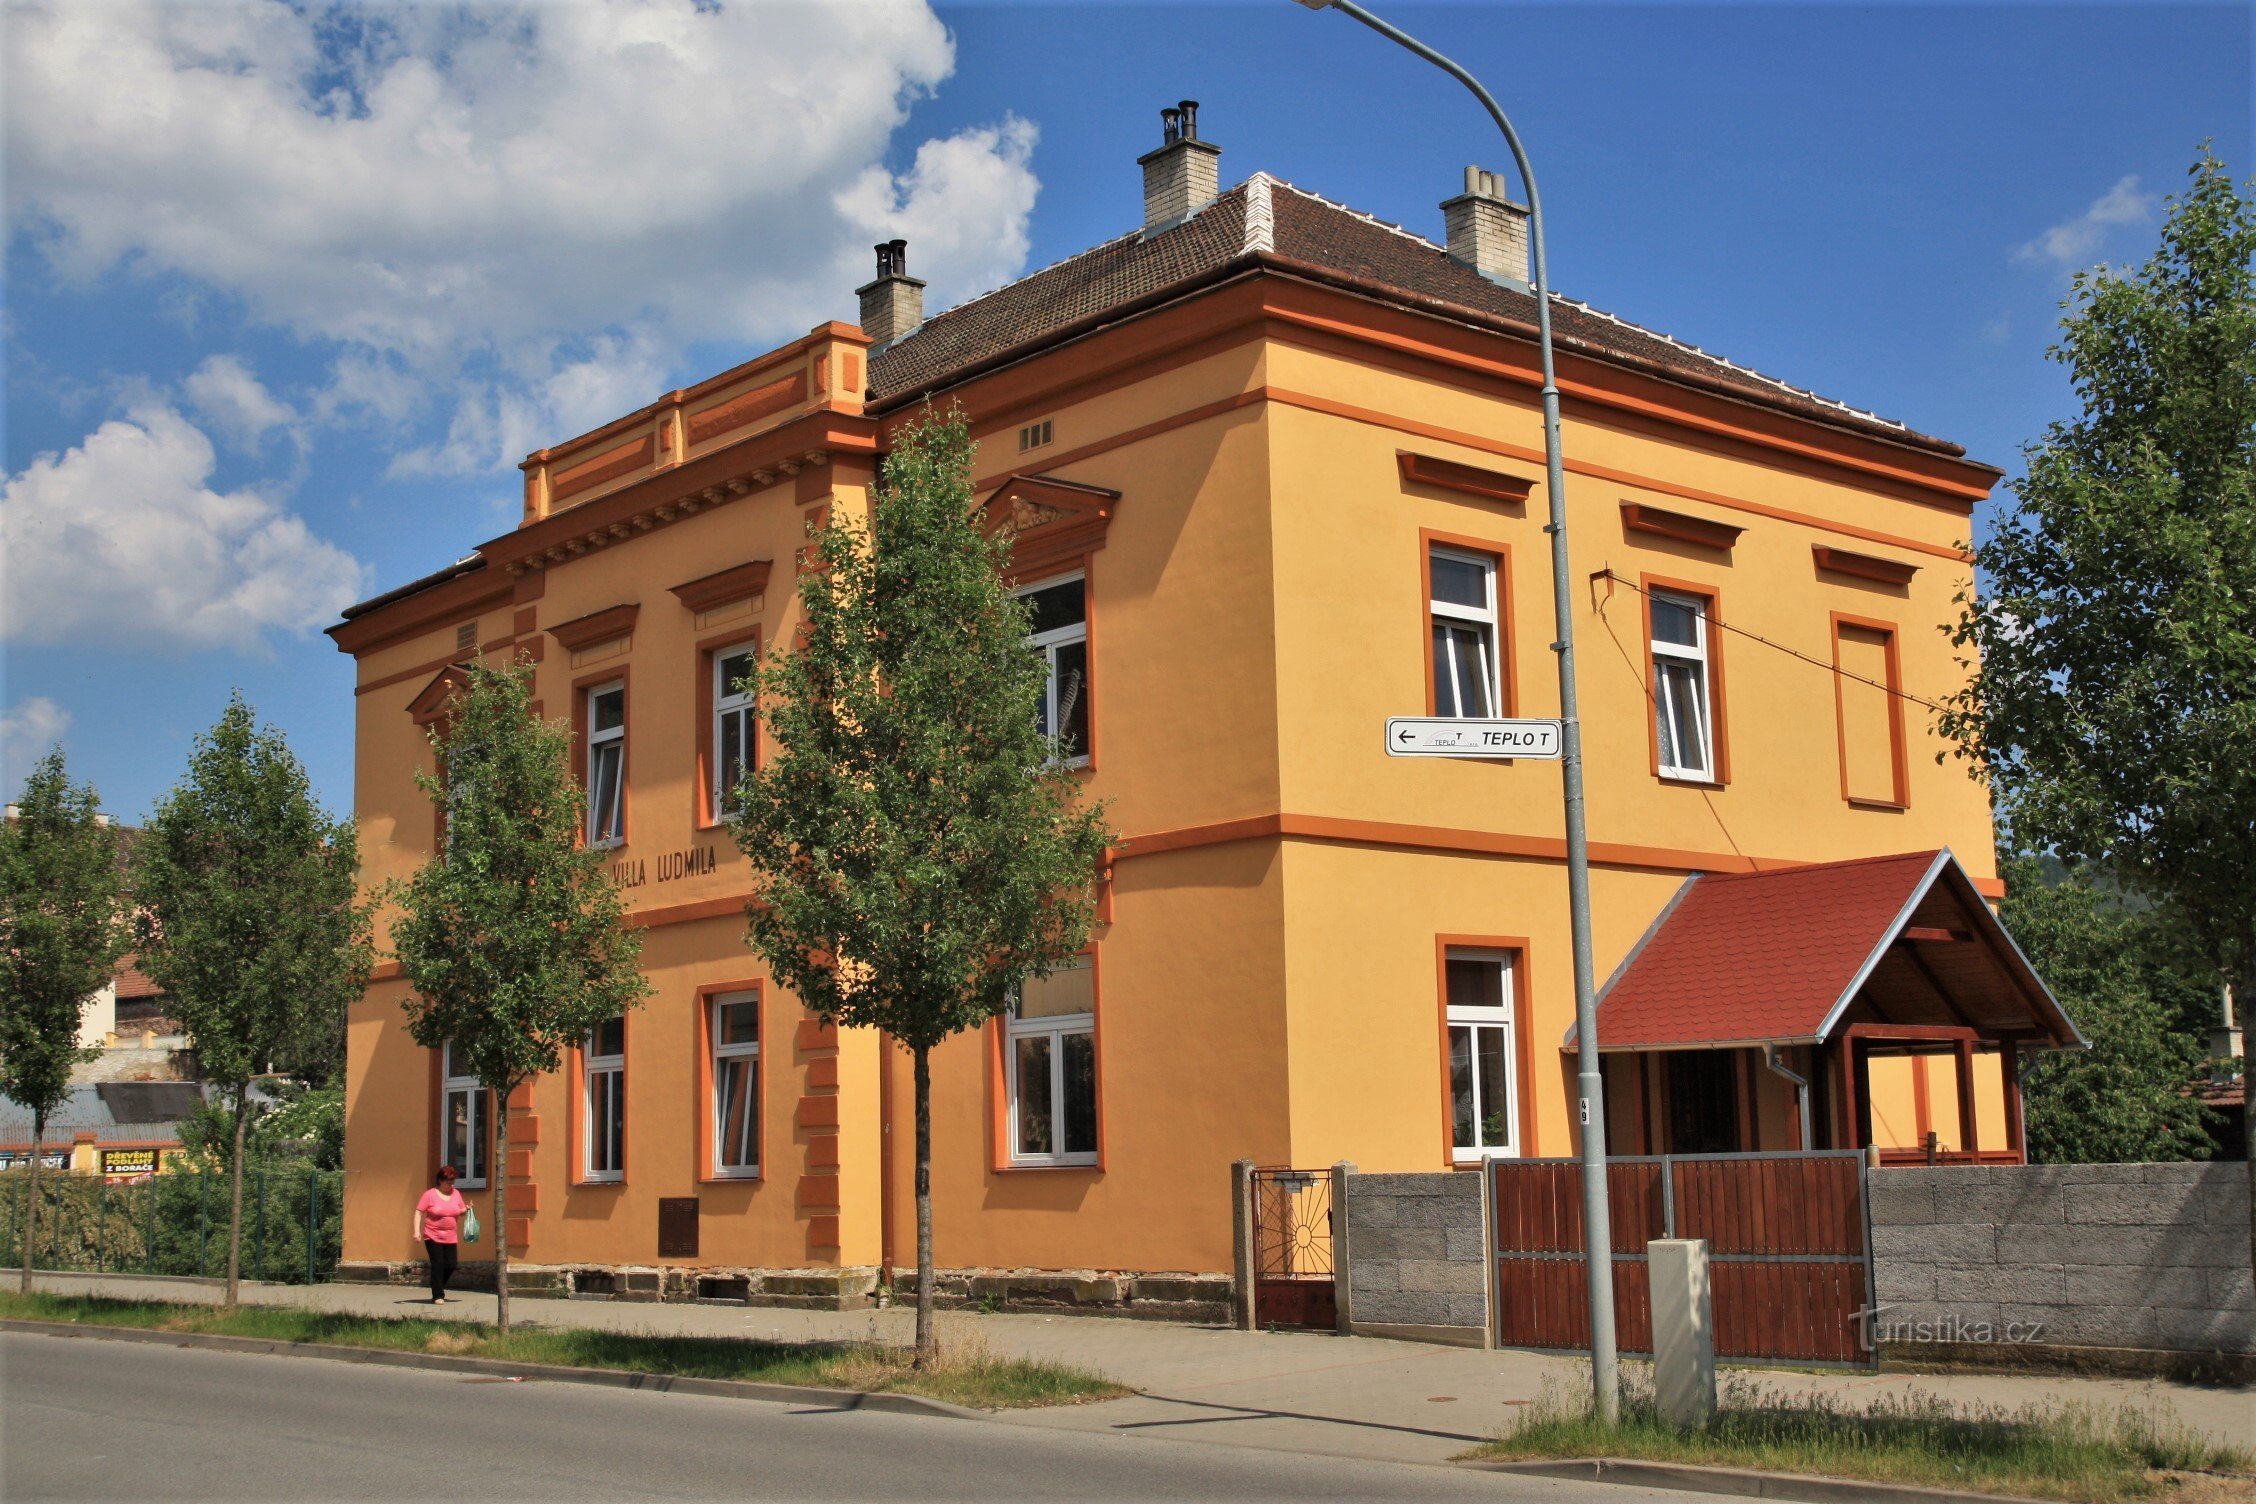 Villa Ludmila near the train station